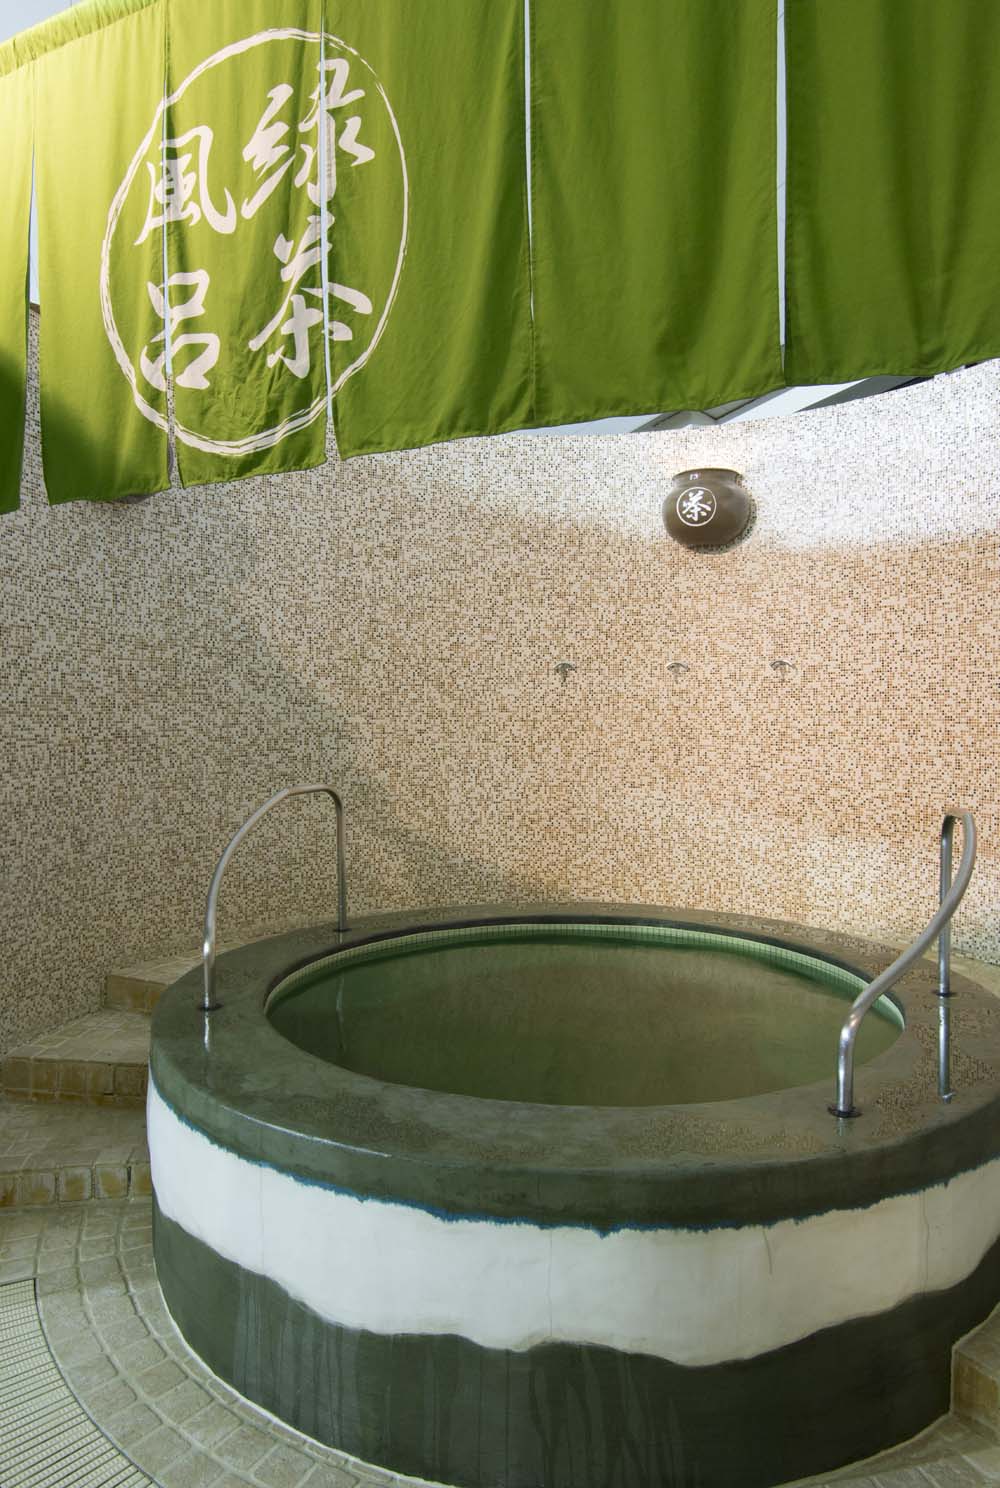 鮮やかな緑色のお湯が特徴の緑茶風呂。